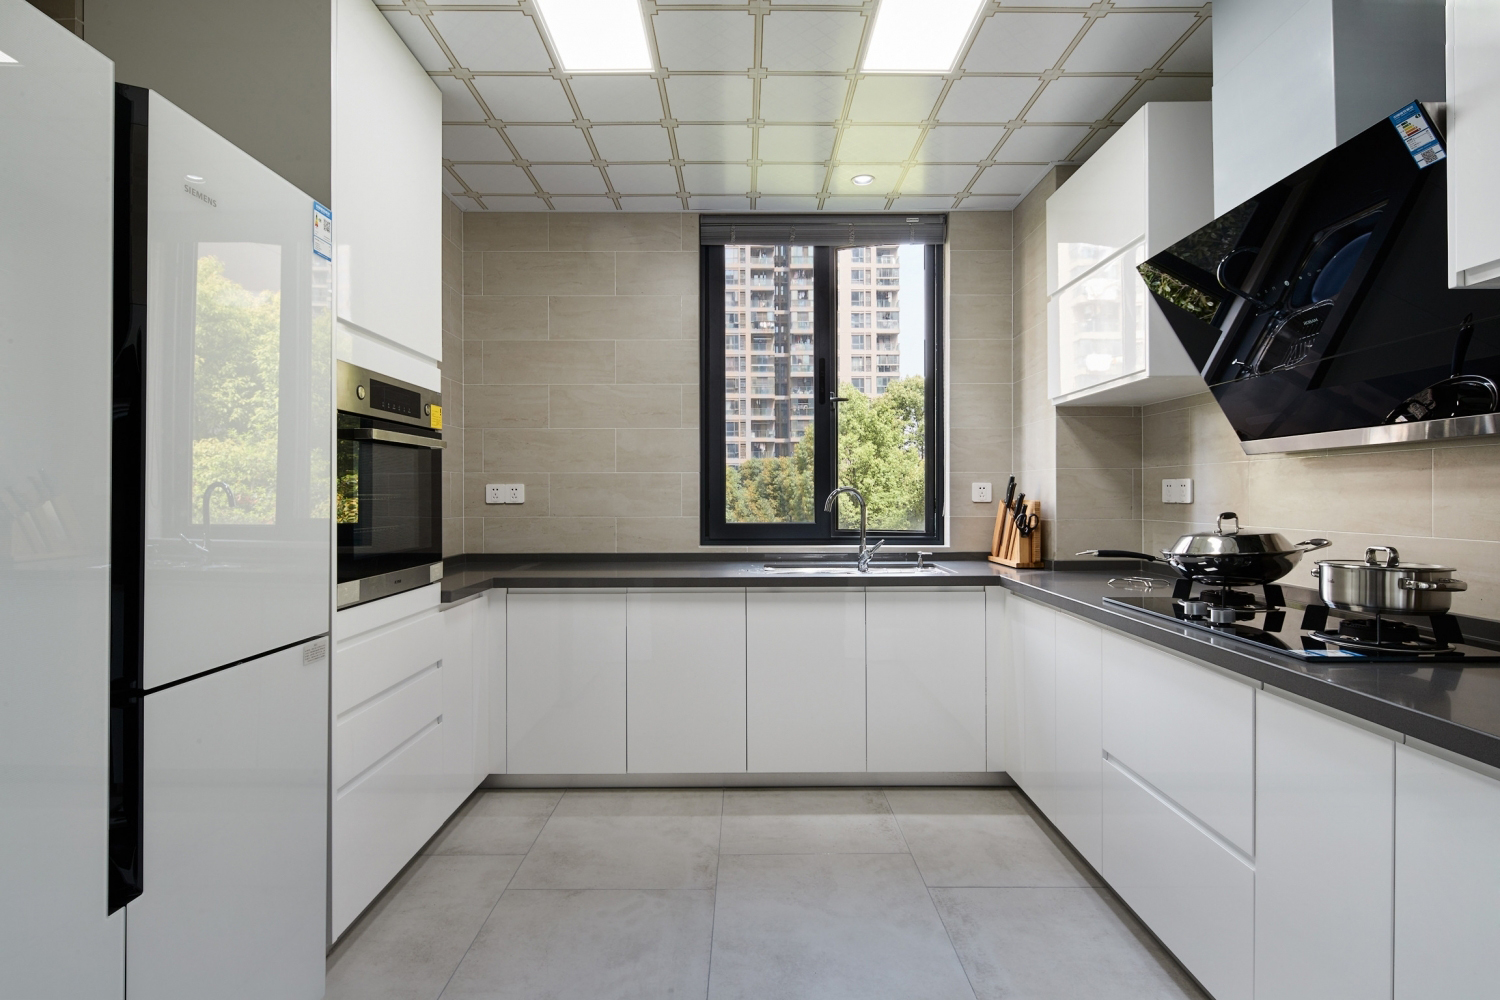 厨房-白、灰色是比较经典的搭配